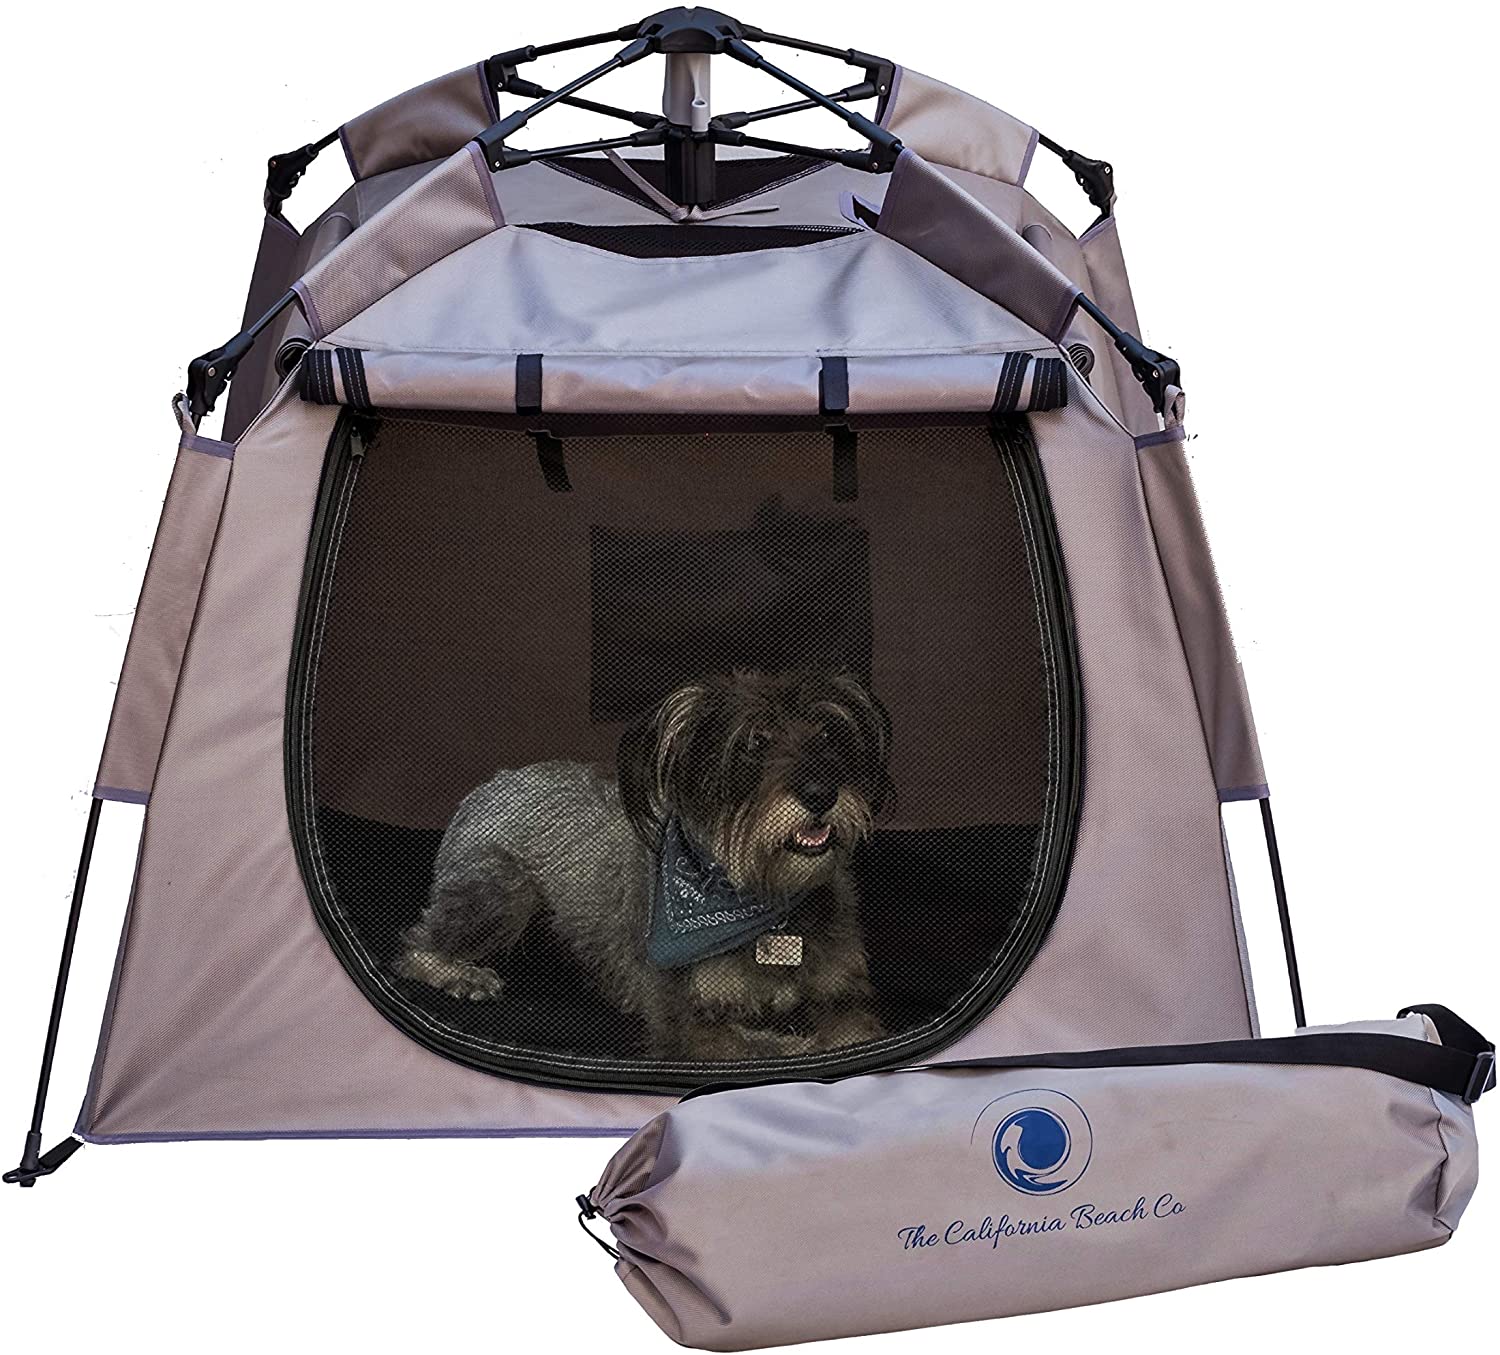 Pop 'N Go Pet Playpen - Lightweight Pop Up Pet & Dog House - Indoor Outdoor Portable Puppy Playpen for Your Furry Friend